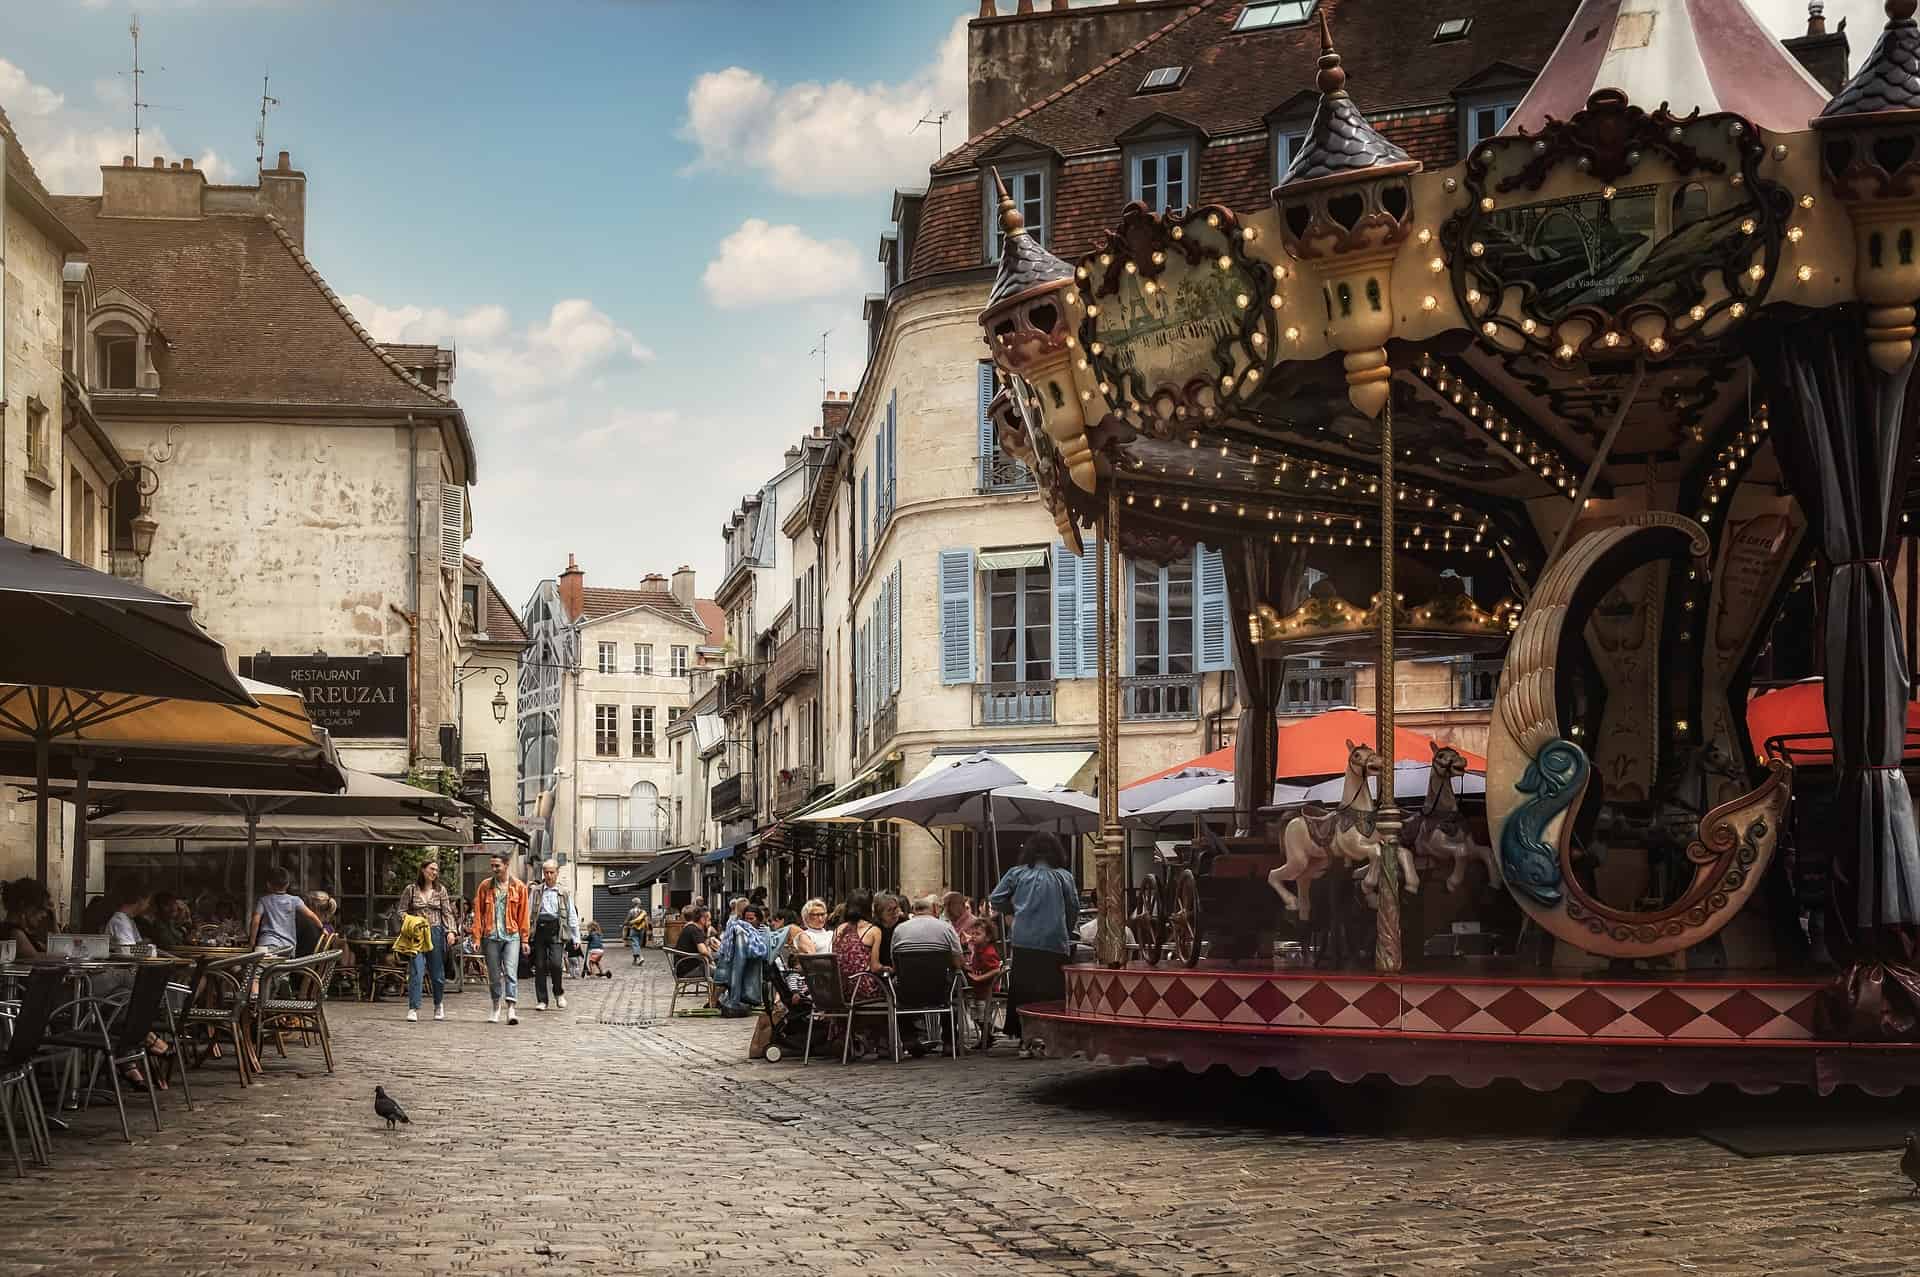 Carouselin Dijon, France.